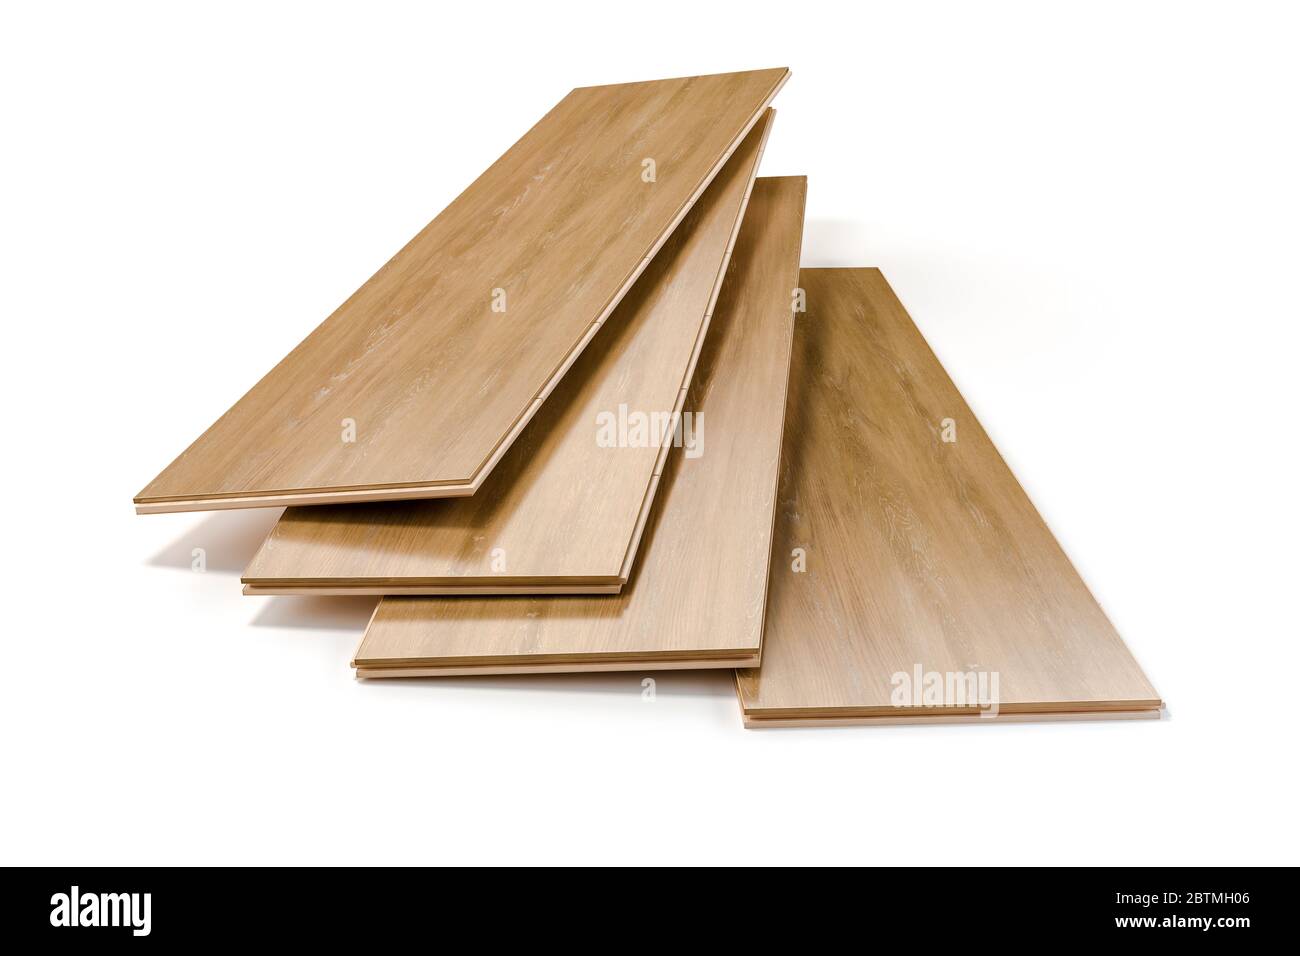 pavimenti in legno laminato 3d su sfondo bianco Foto Stock